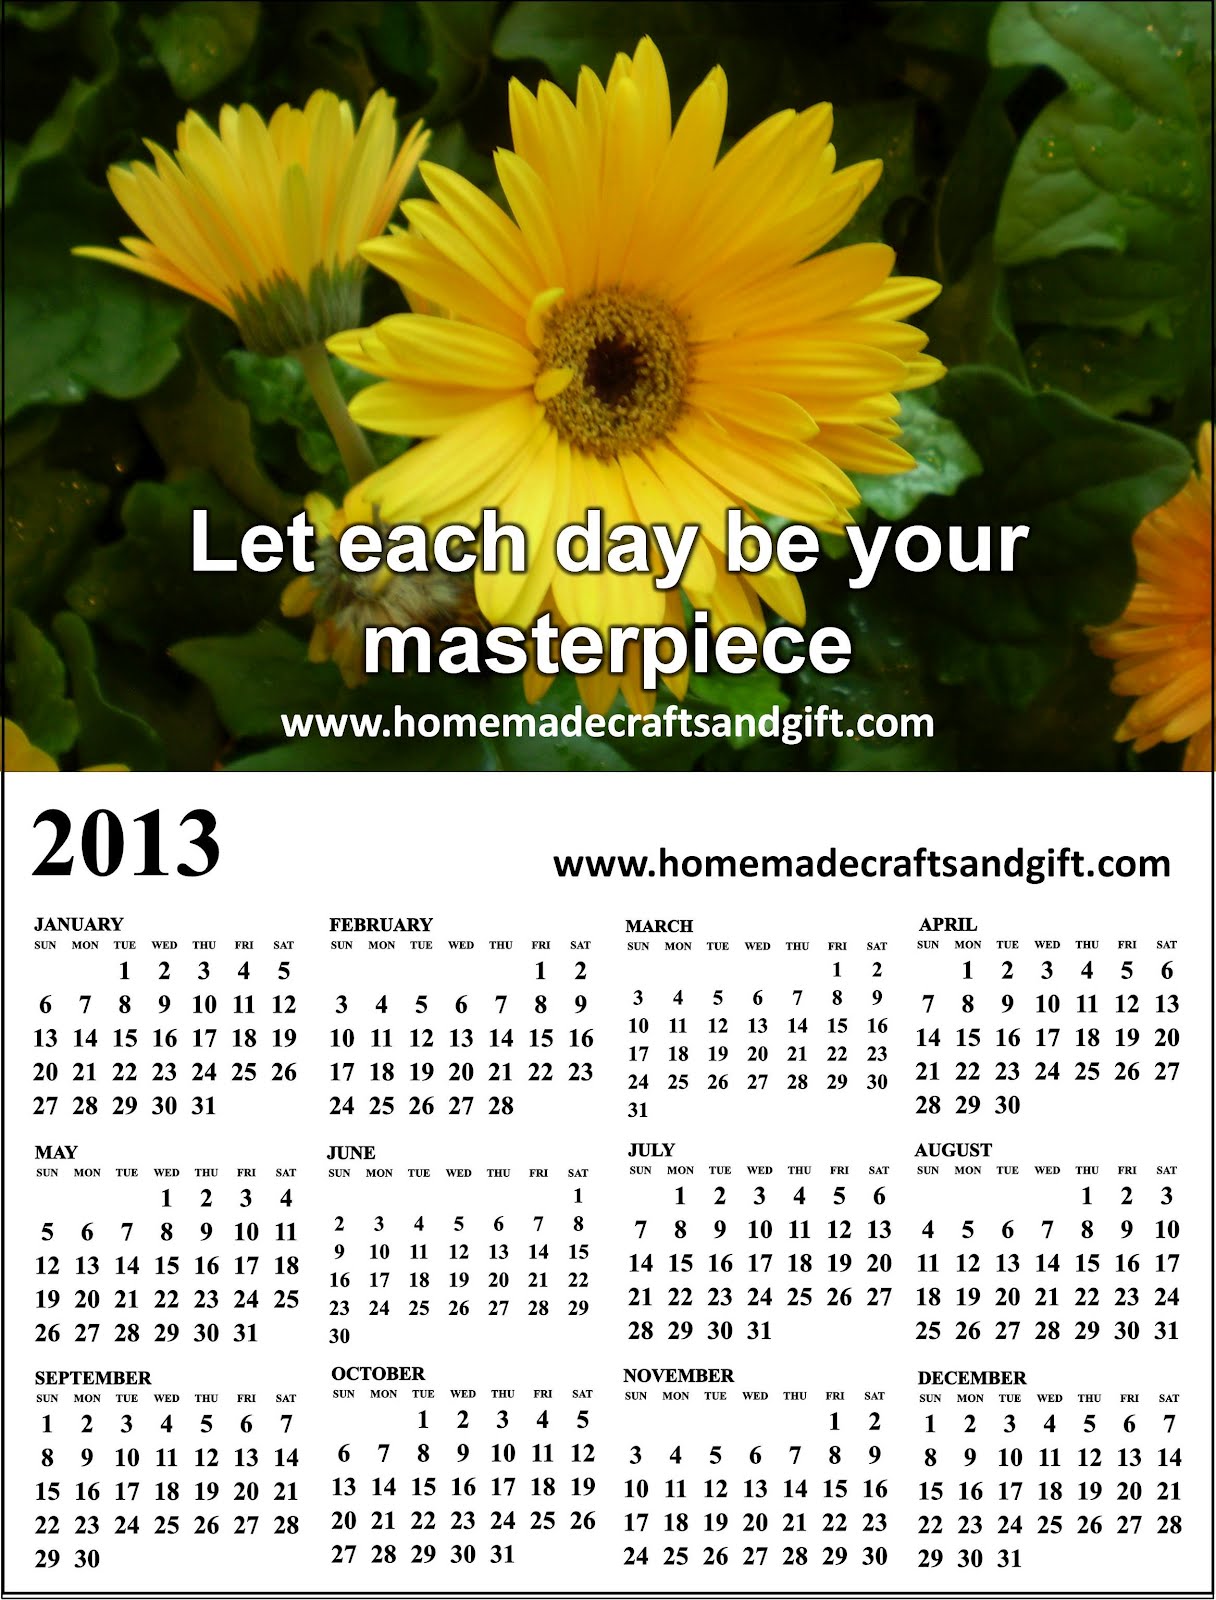 http://4.bp.blogspot.com/-kE9h9p2QZNM/UAjMw9zma1I/AAAAAAAAchM/ELt3LtcK23I/s1600/HM2+Wallpaper+2013+Calendar+picture.jpg